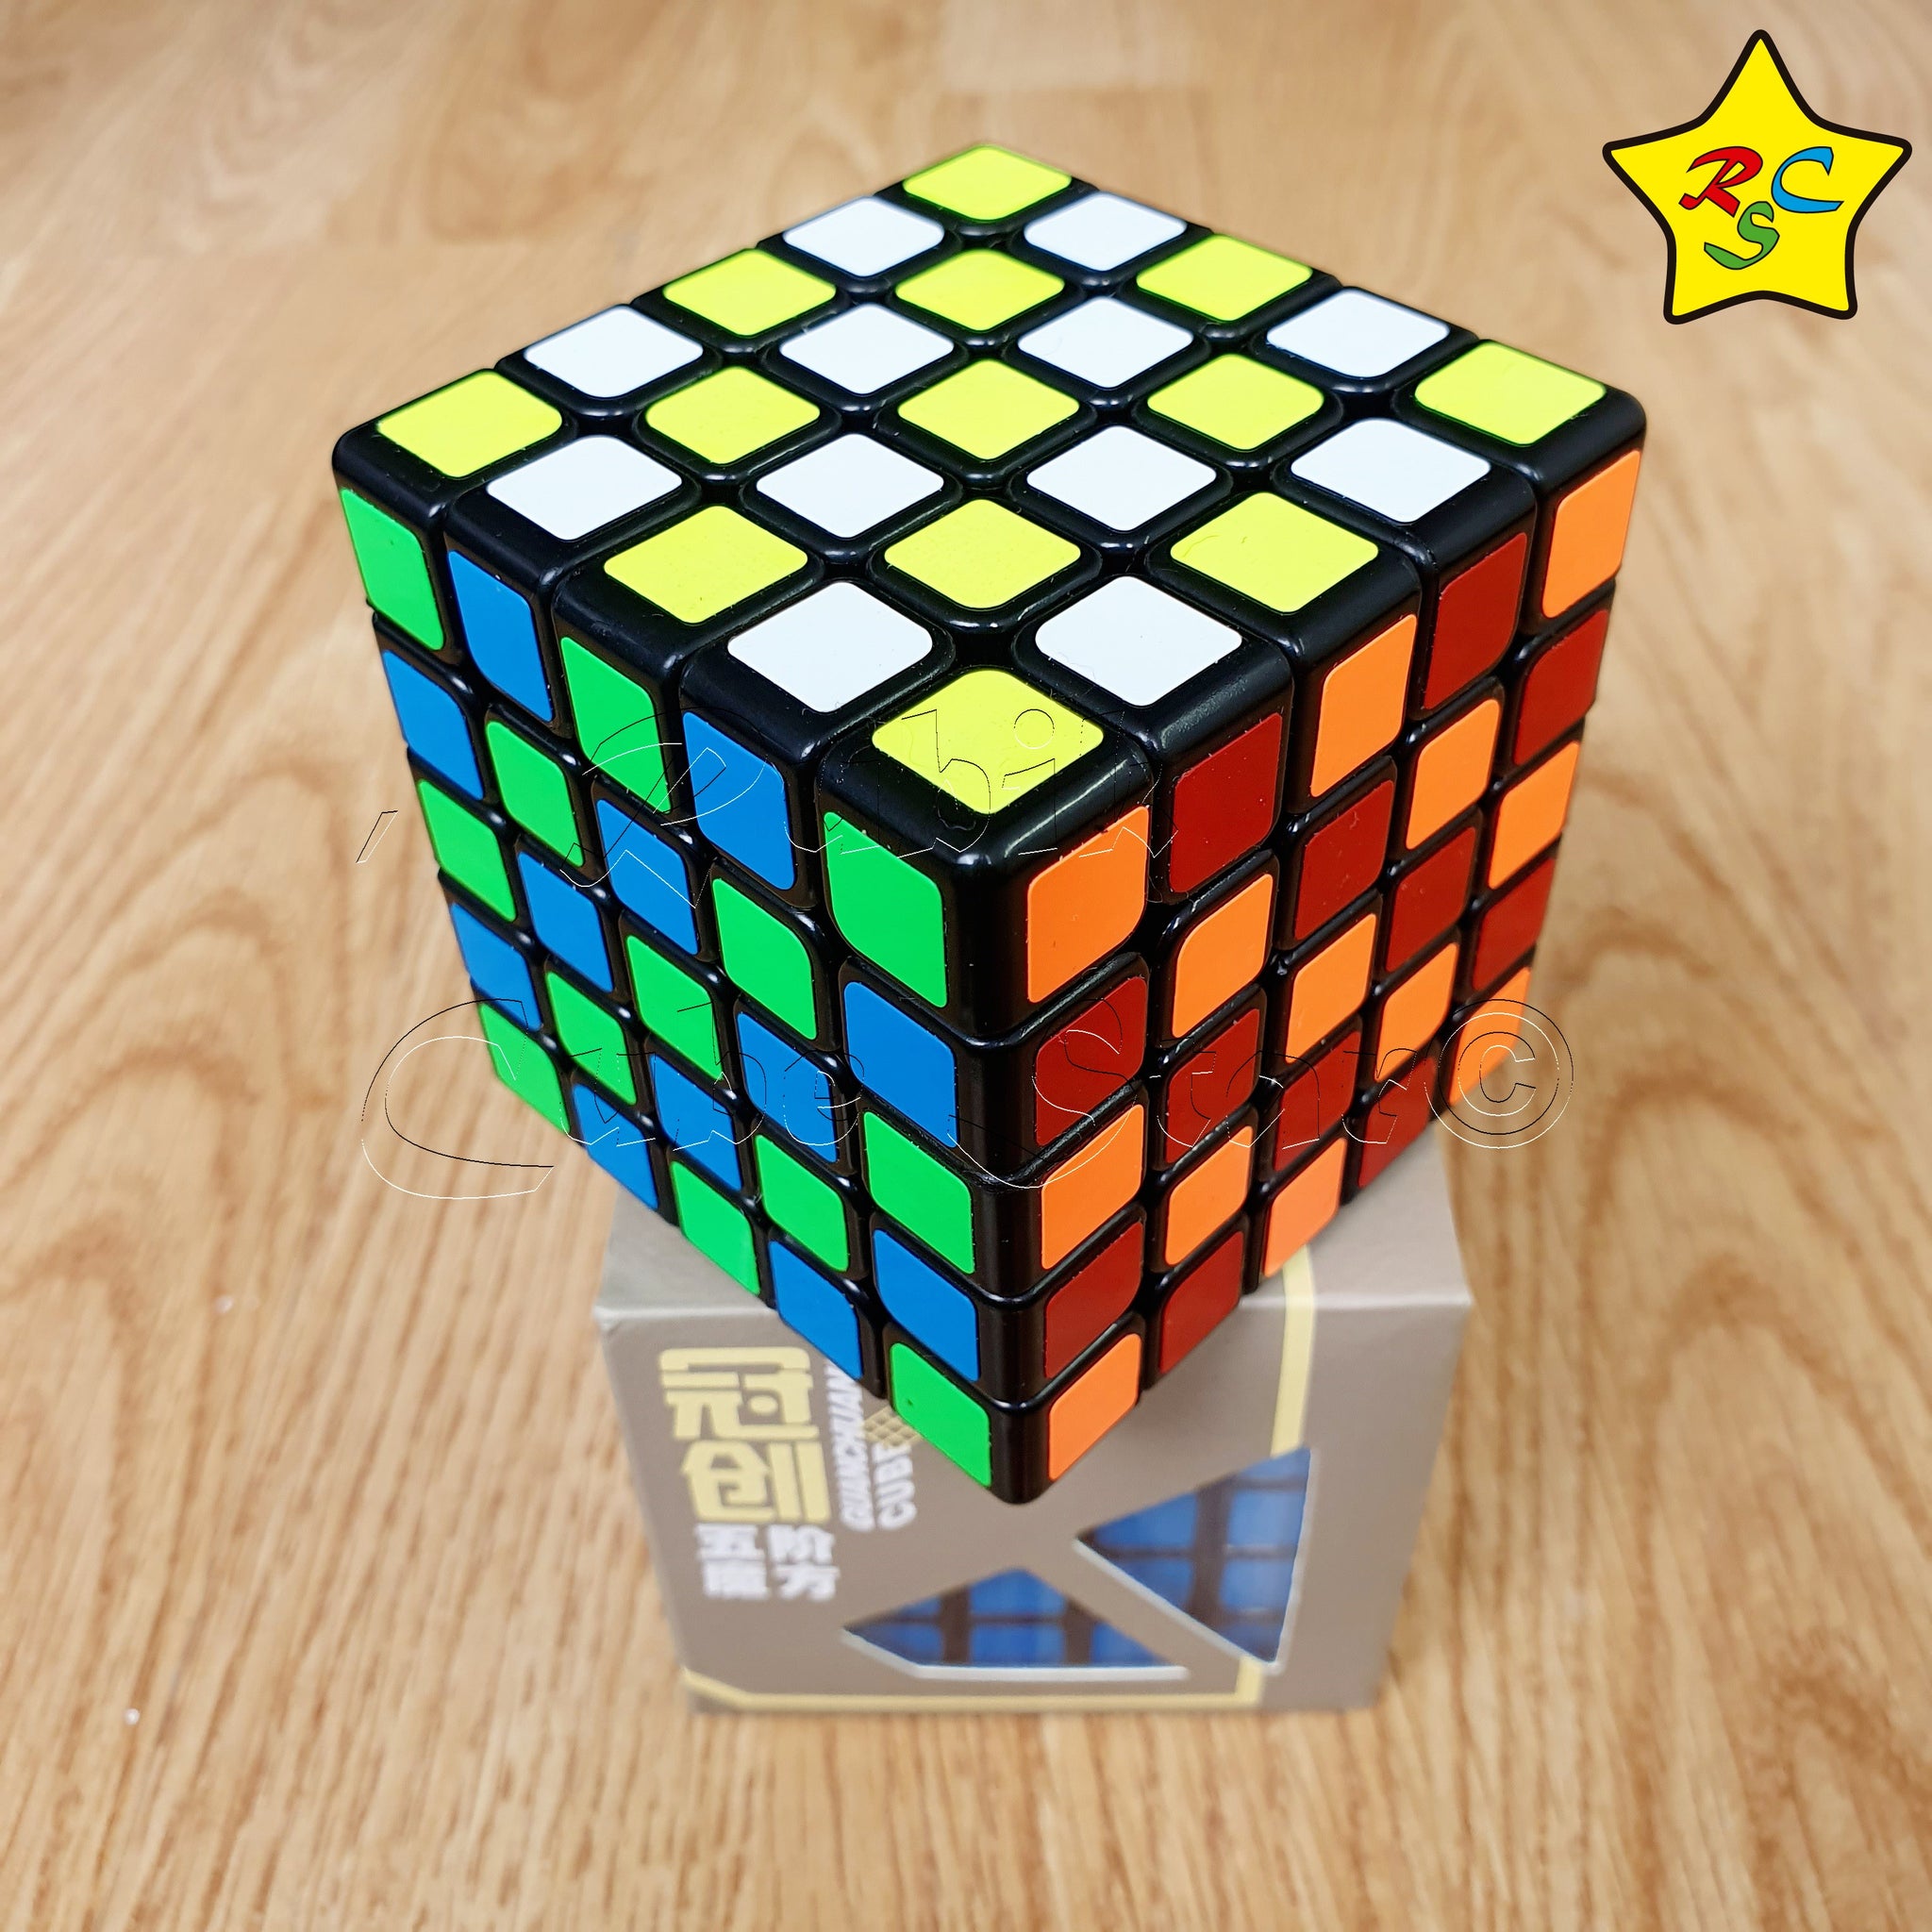 Cubo De Rubik 5x5 Cubo Rubik 5x5 Moyu Yj Guanchuang Negro Stickers Speedcube – Rubik Cube Star